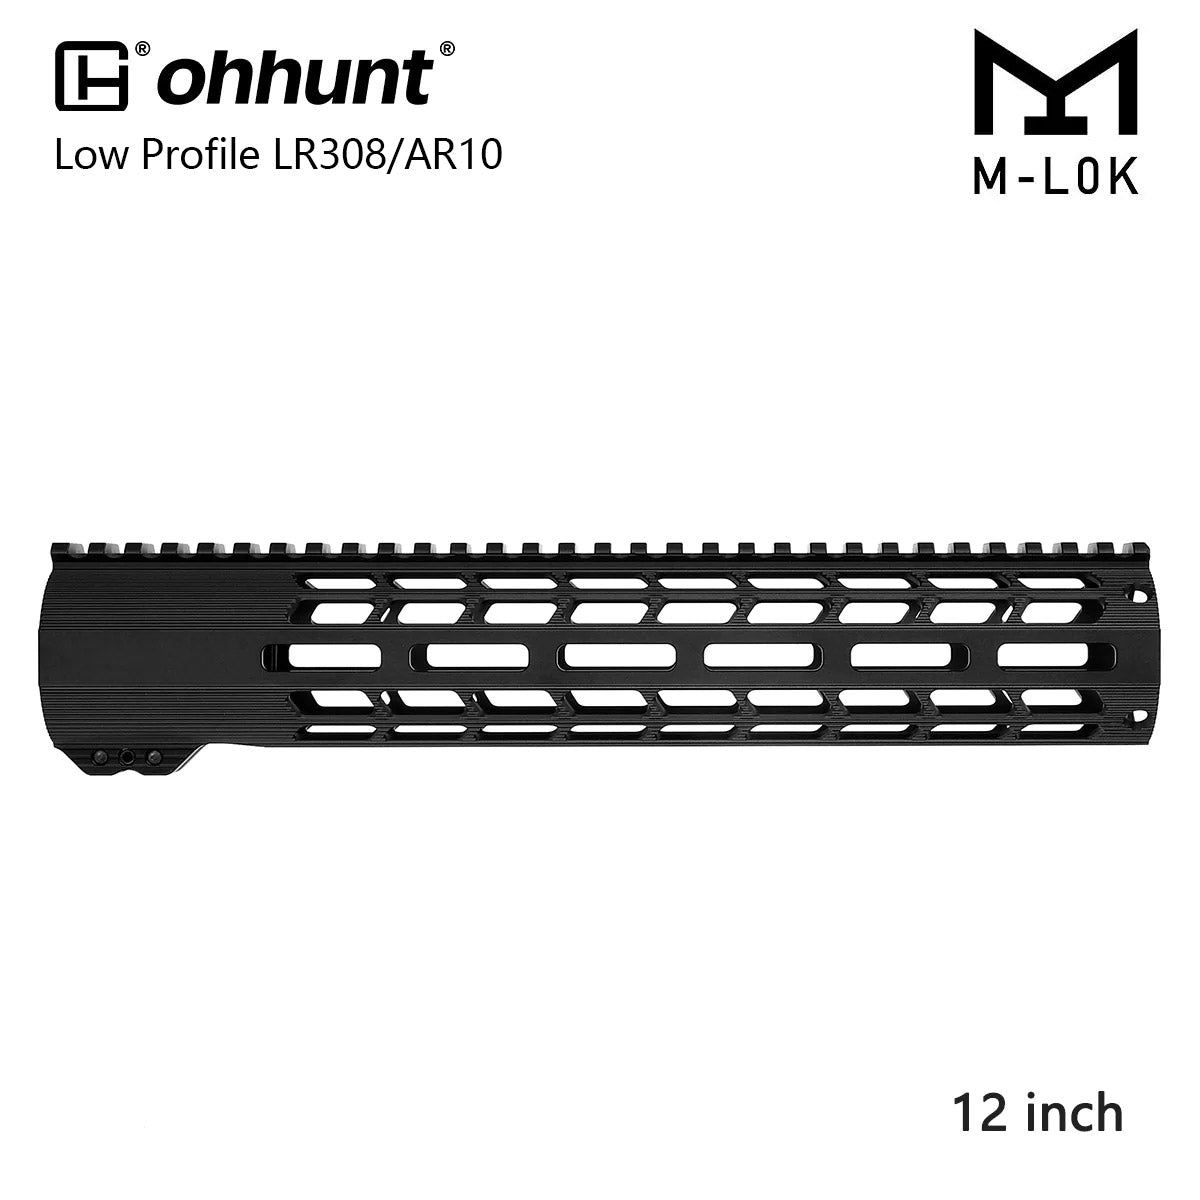 ohhunt® Vòng nhẹ AR10 LR-308 Bộ phận bảo vệ tay nổi tự do M-lok với Đai ốc nòng 12" 15" 17"